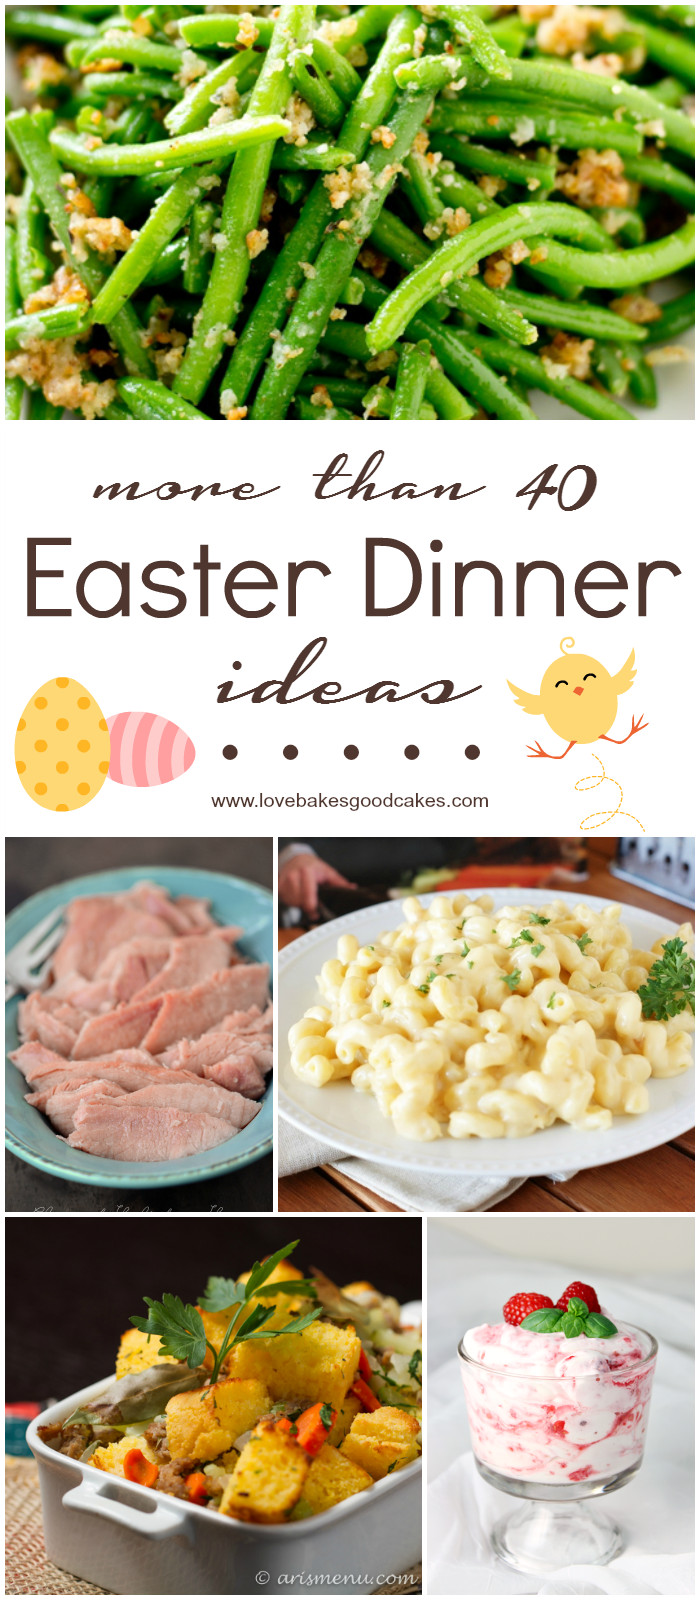 Easter Dinner For Two Ideas
 More than 40 Easter Dinner Ideas